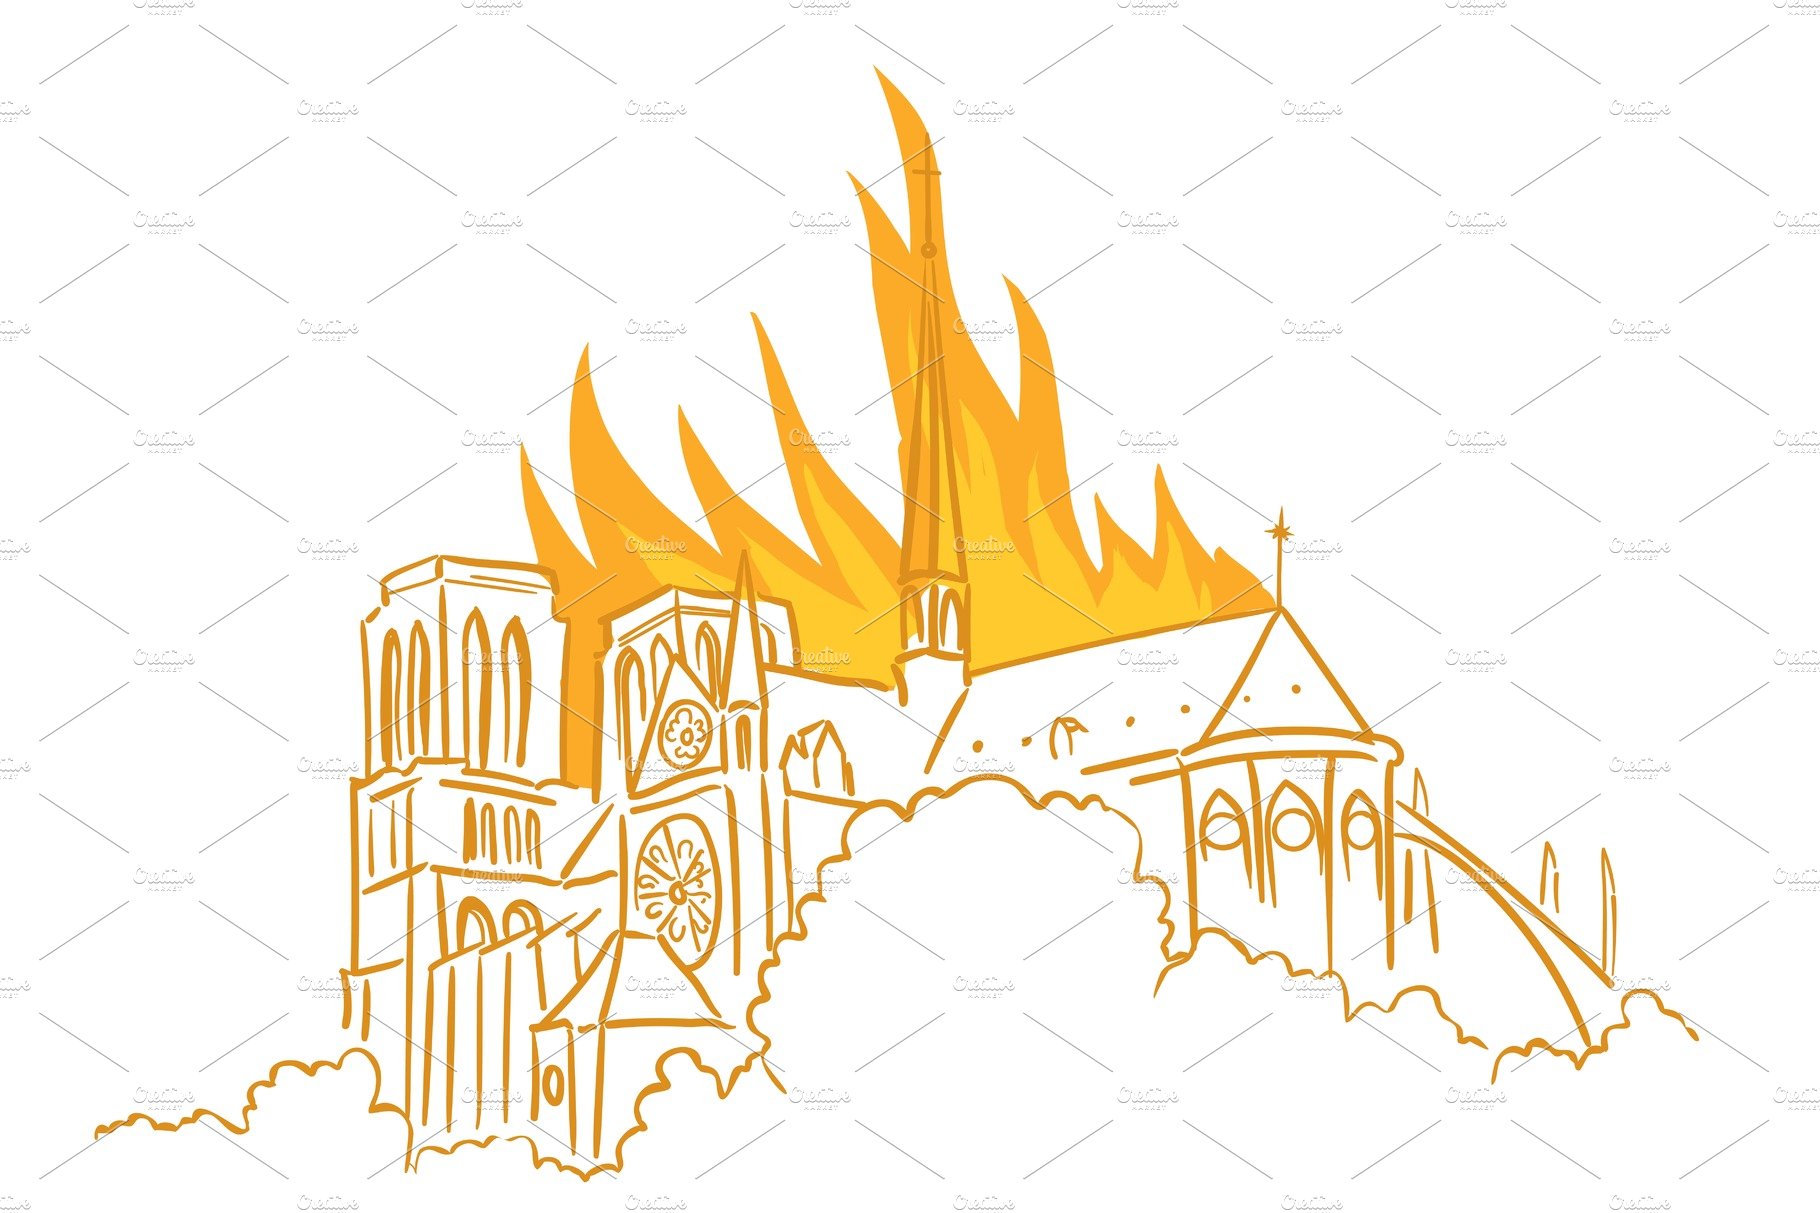 Notre-Dame de Paris fire. Broke out cover image.